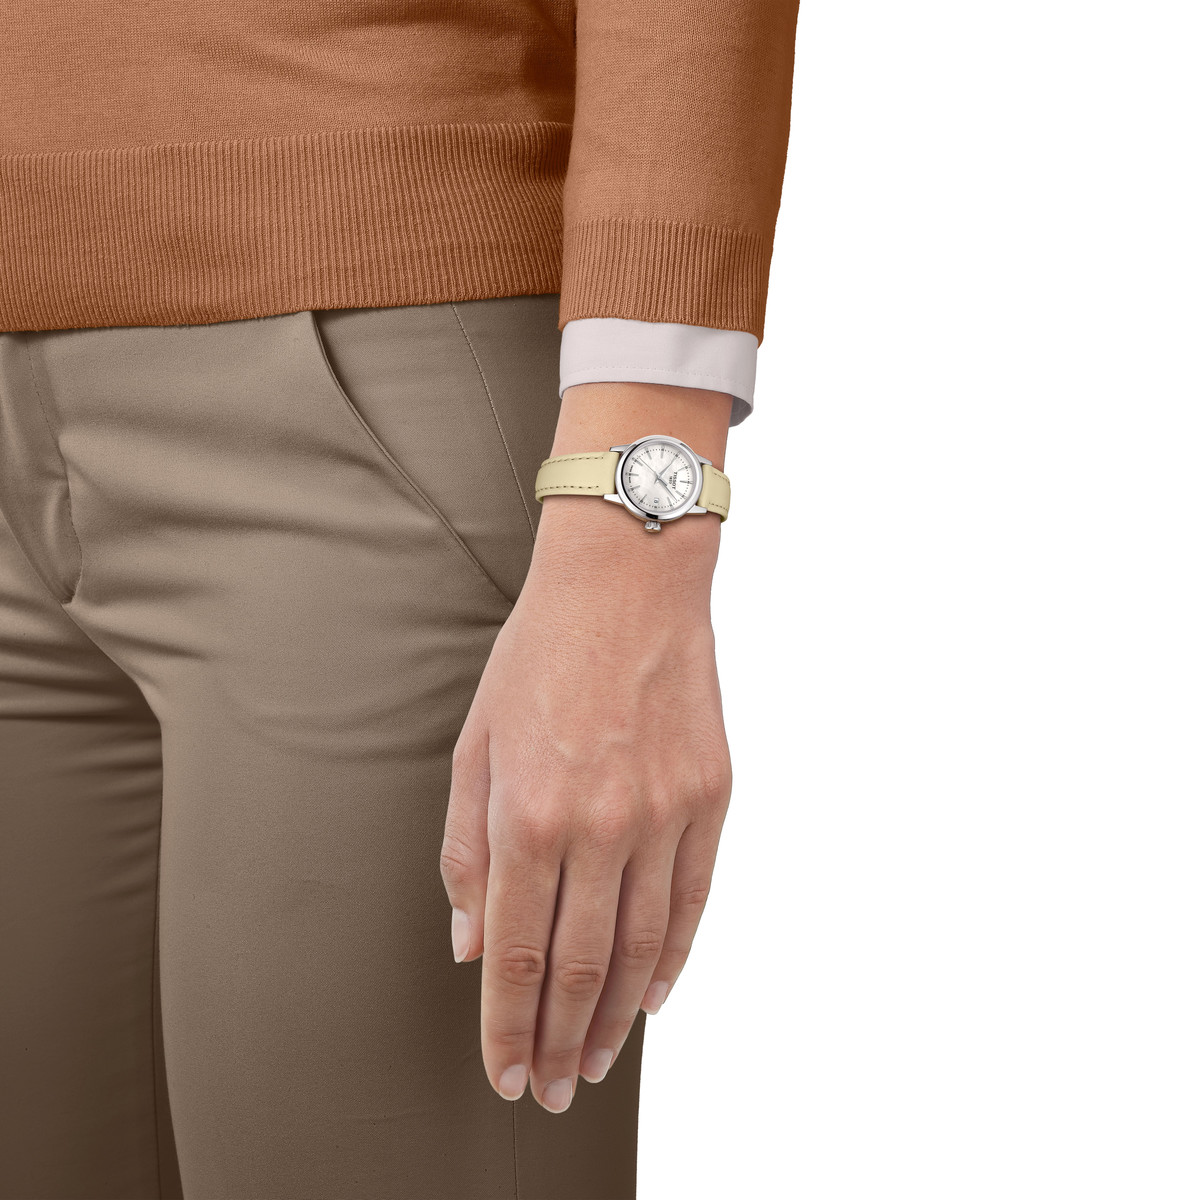 Montre TISSOT T-classic femme bracelet cuir beige - vue porté 1